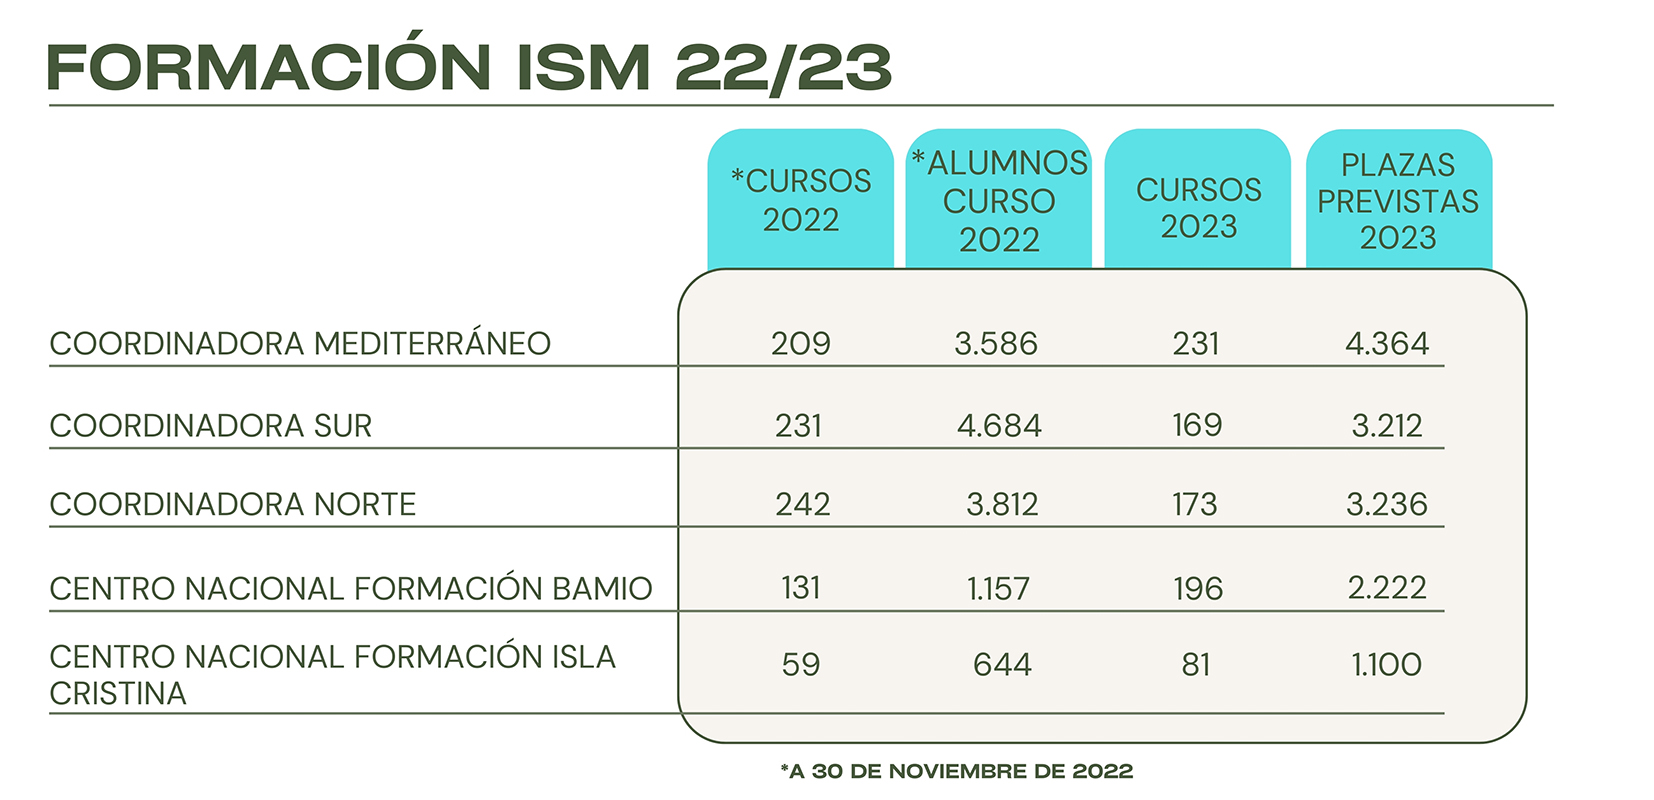 Cursos de formación ofrecidos por el ISM en 2022 y 2023